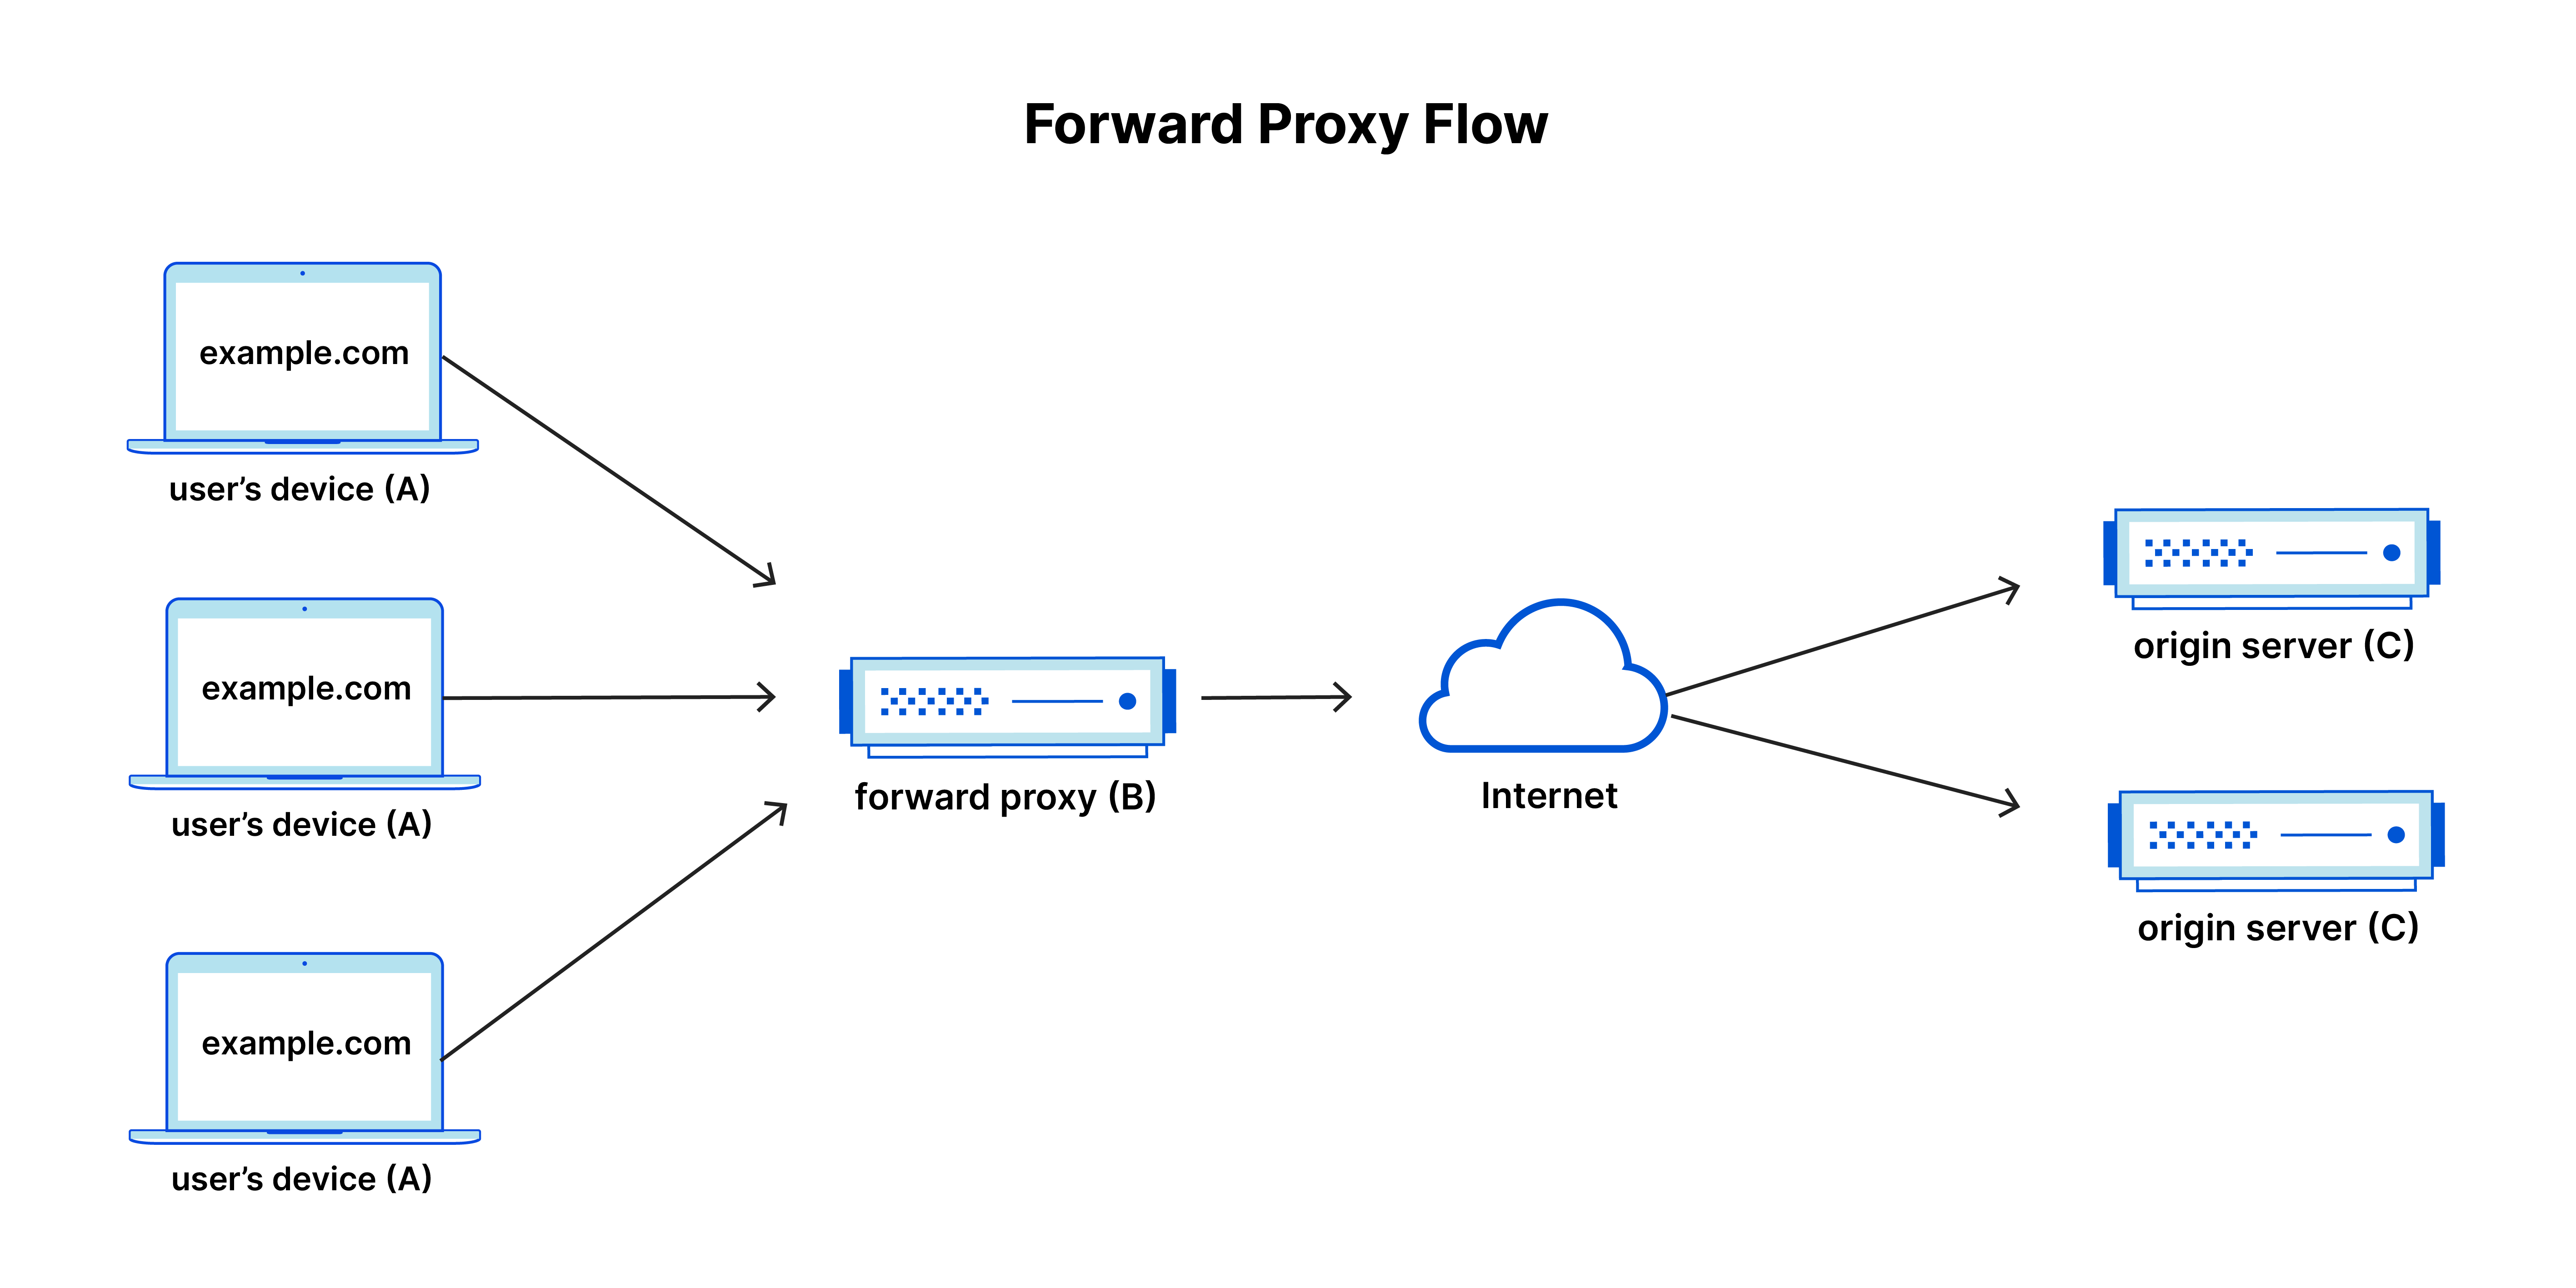 フォワードプロキシのフロー：ユーザーの端末（A）→フォワードプロキシ（B）→インターネット→オリジンサーバー（C）とトラフィックが流れます。